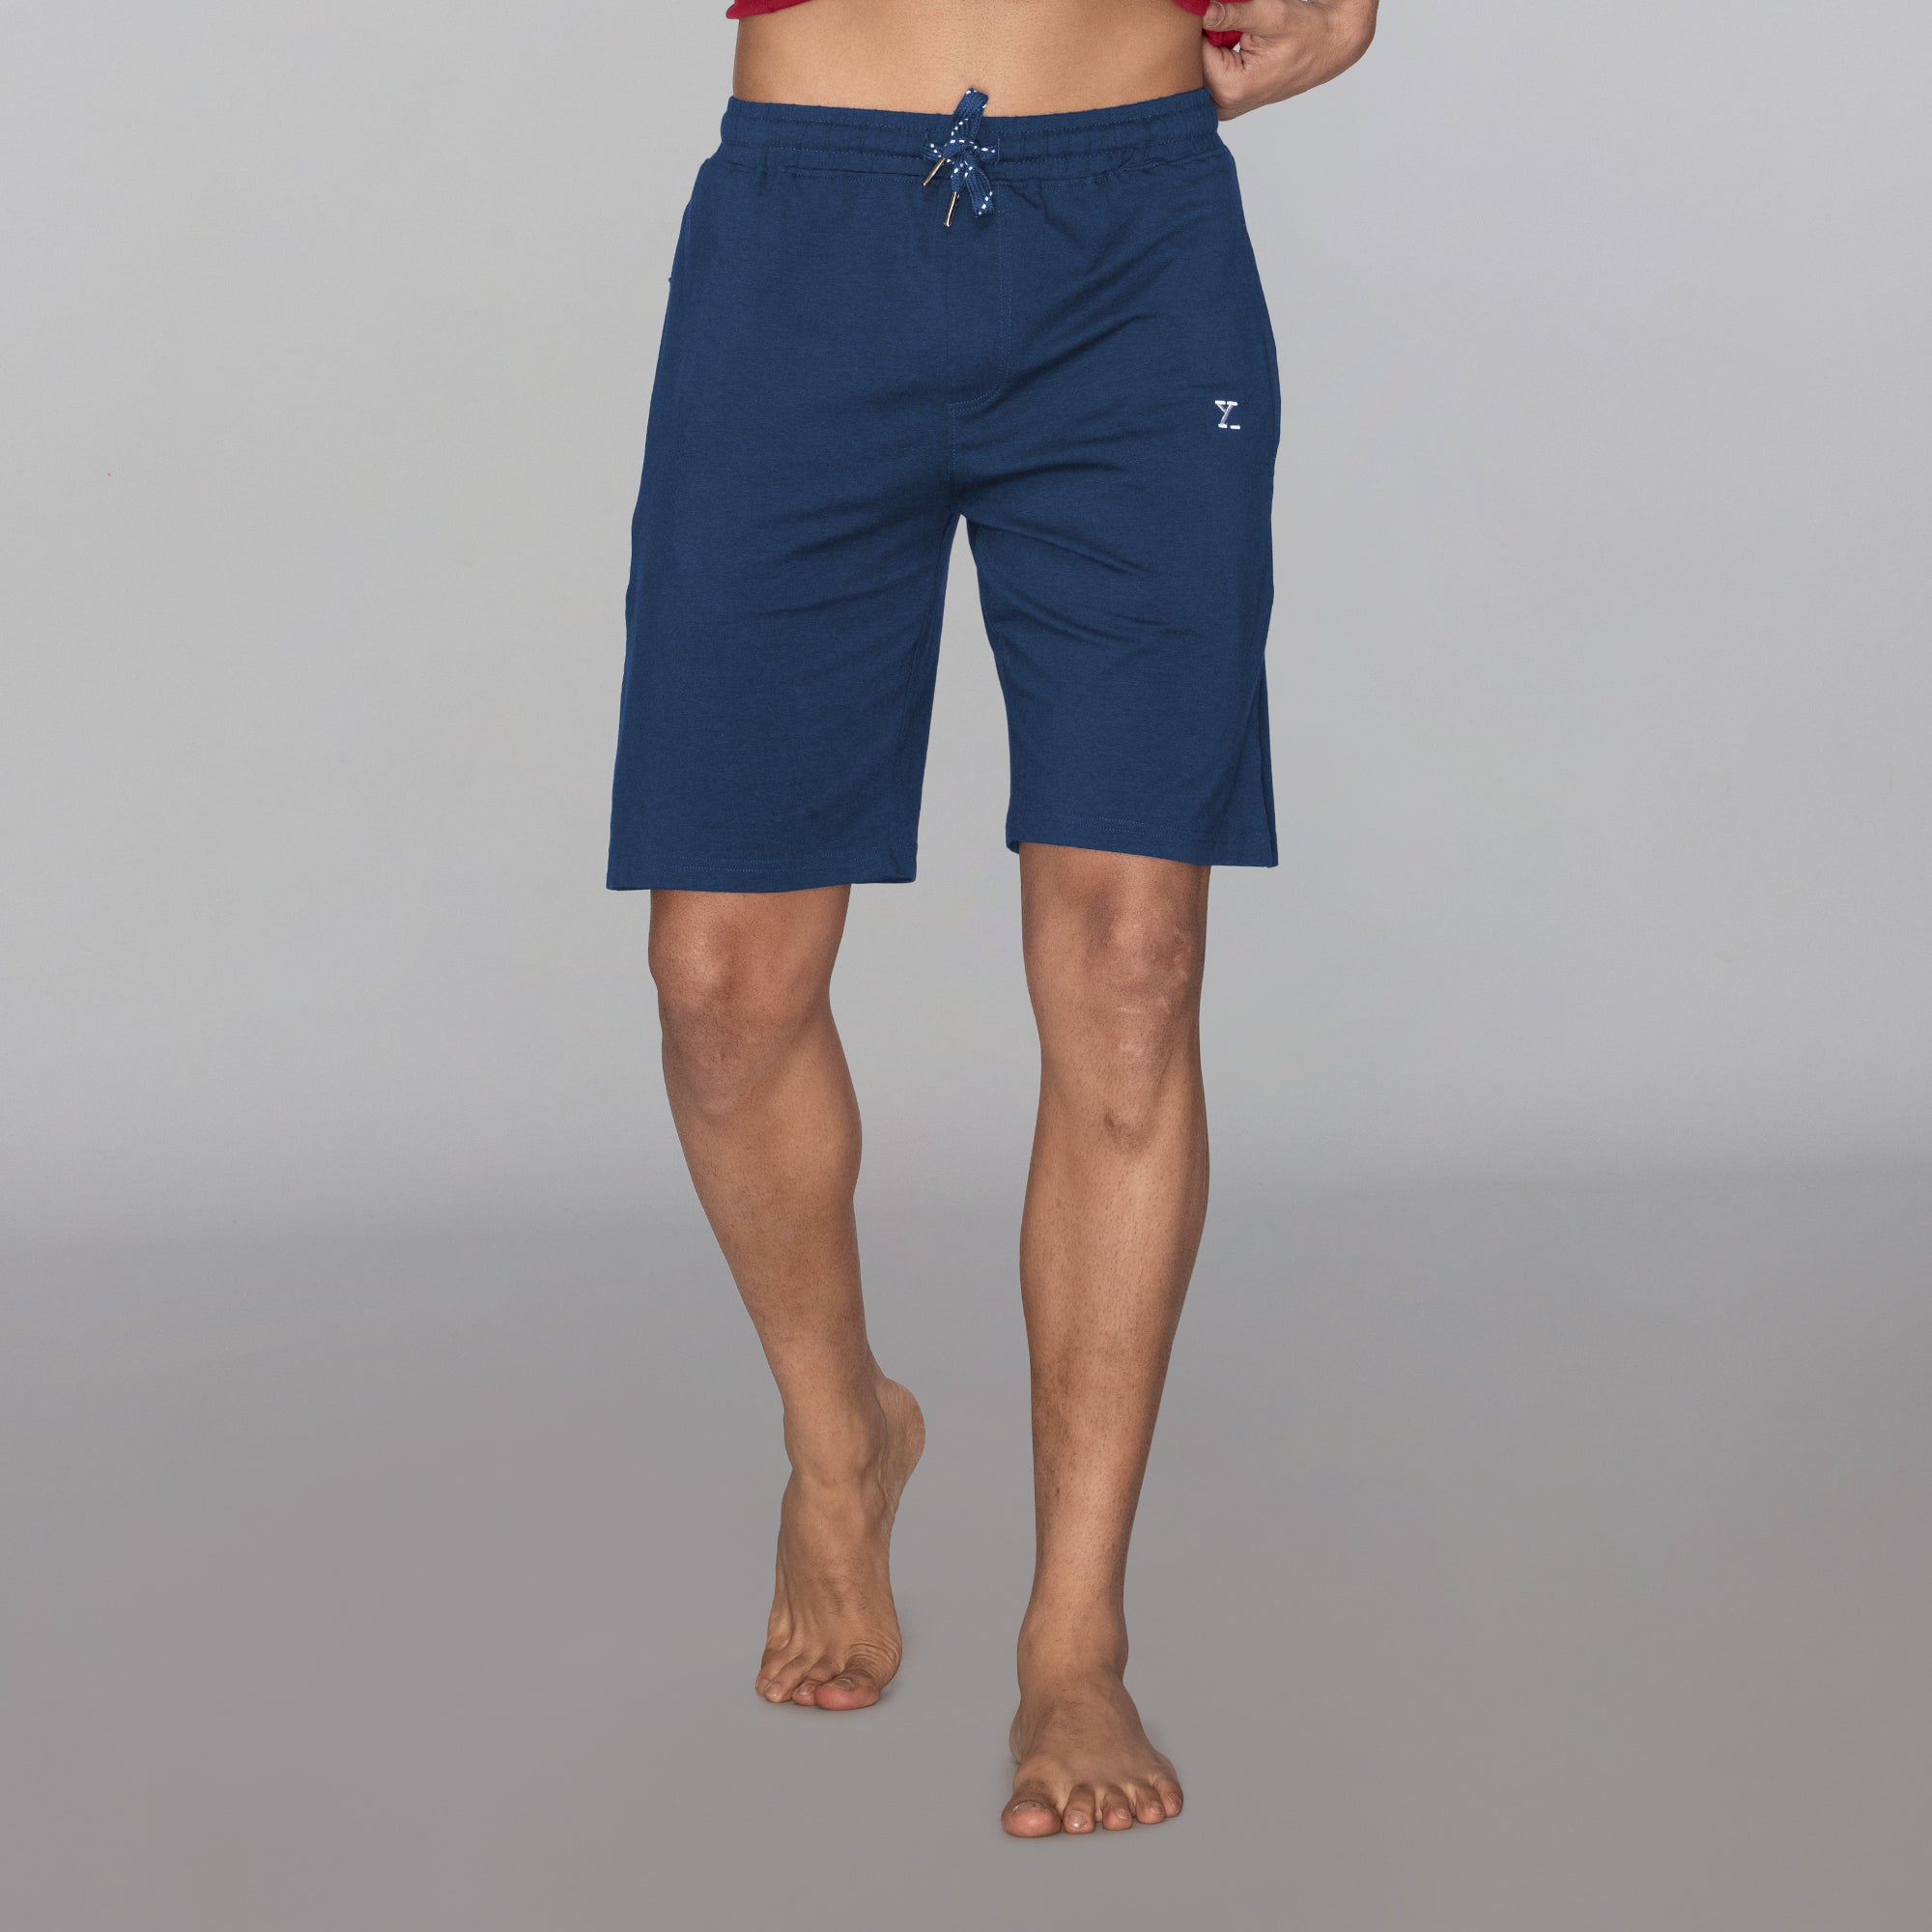 Ace Modal-Cotton Shorts For Men Estate Blue - XYXX Mens Apparels